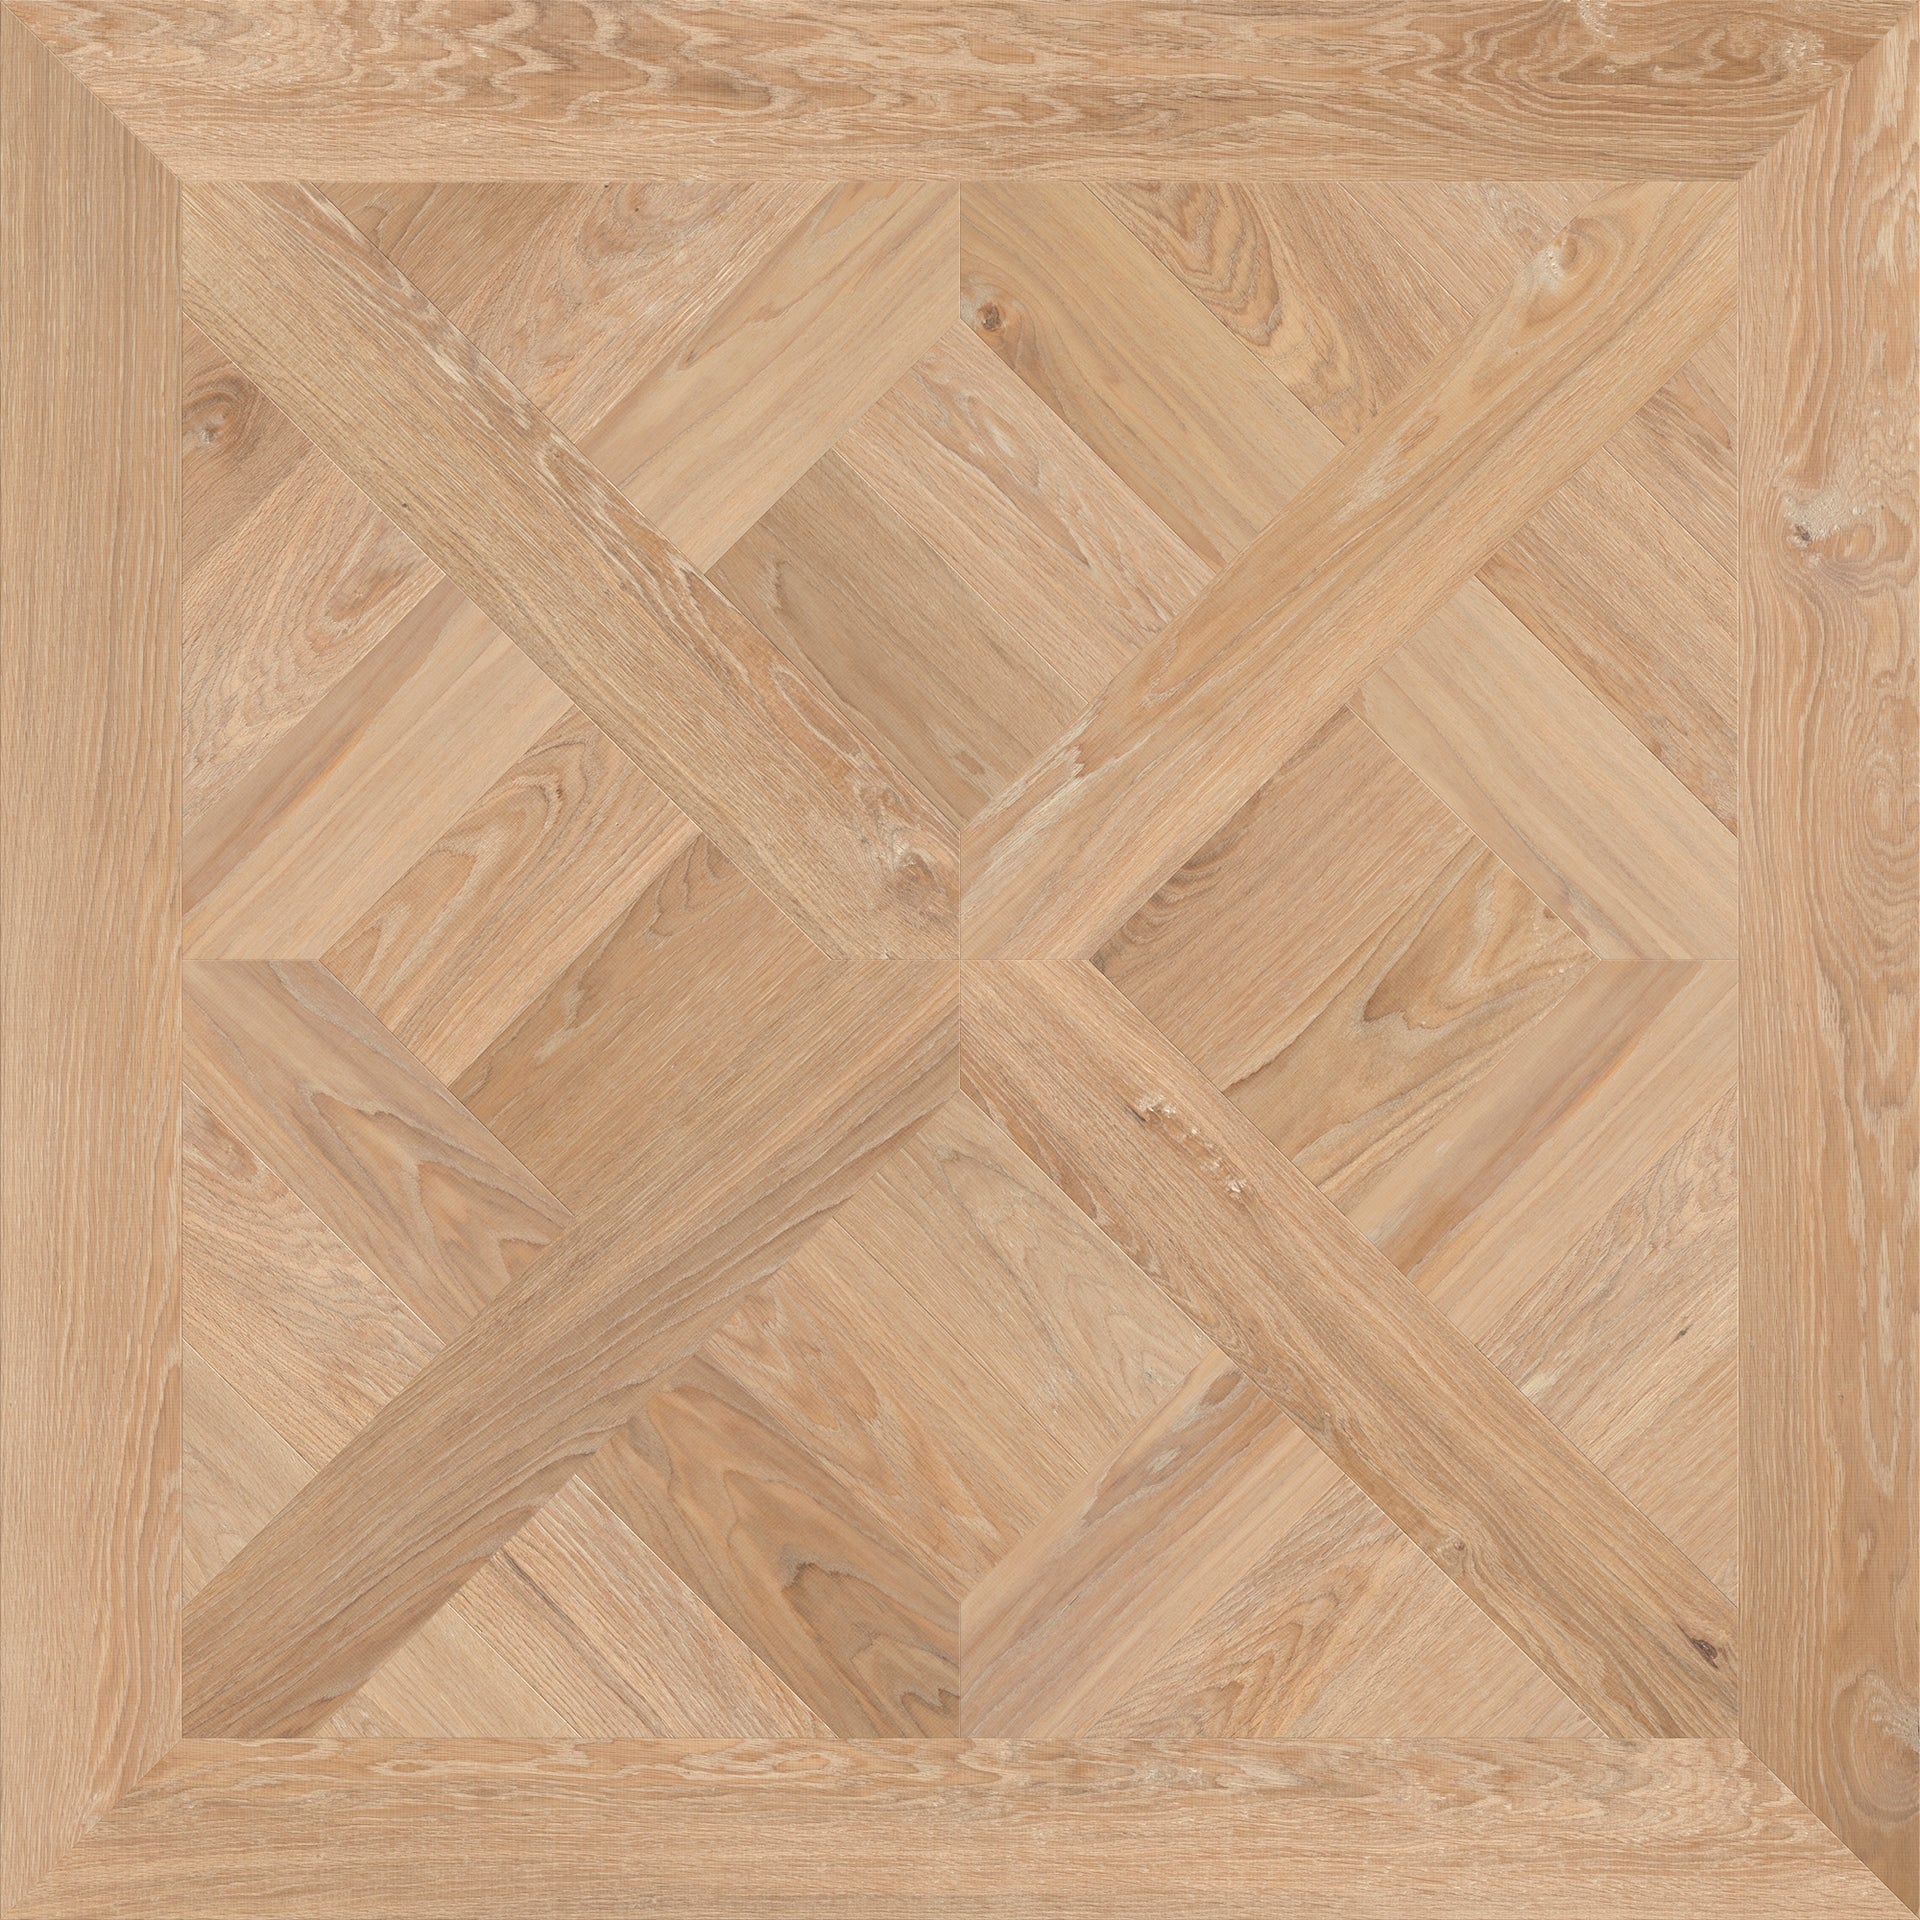 Arenberg patroon houten vloeren paneel